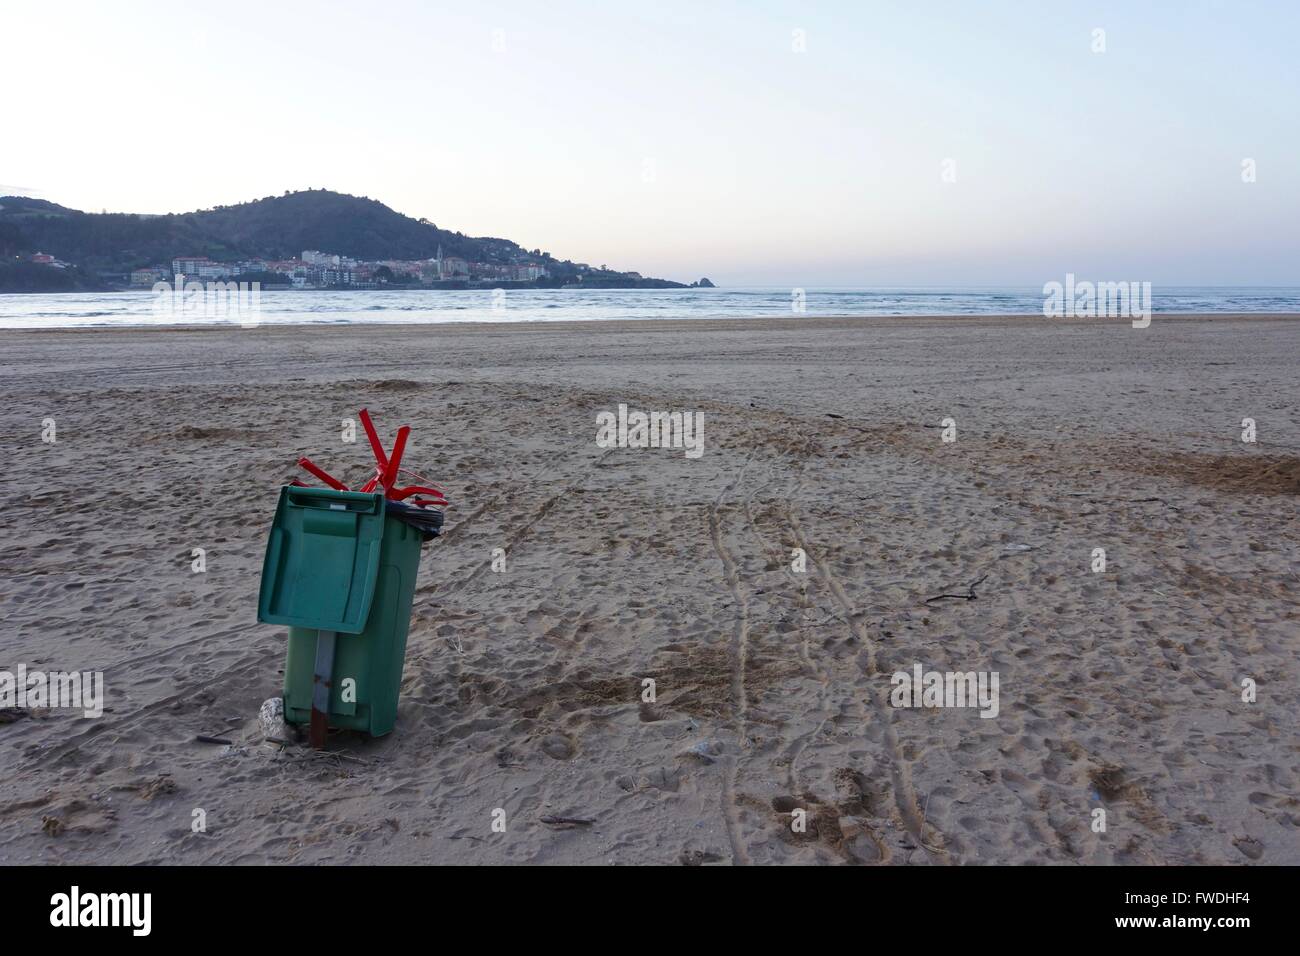 Un bidone della spazzatura su una spiaggia vuota con una sedia in plastica  farcite in esso Foto stock - Alamy